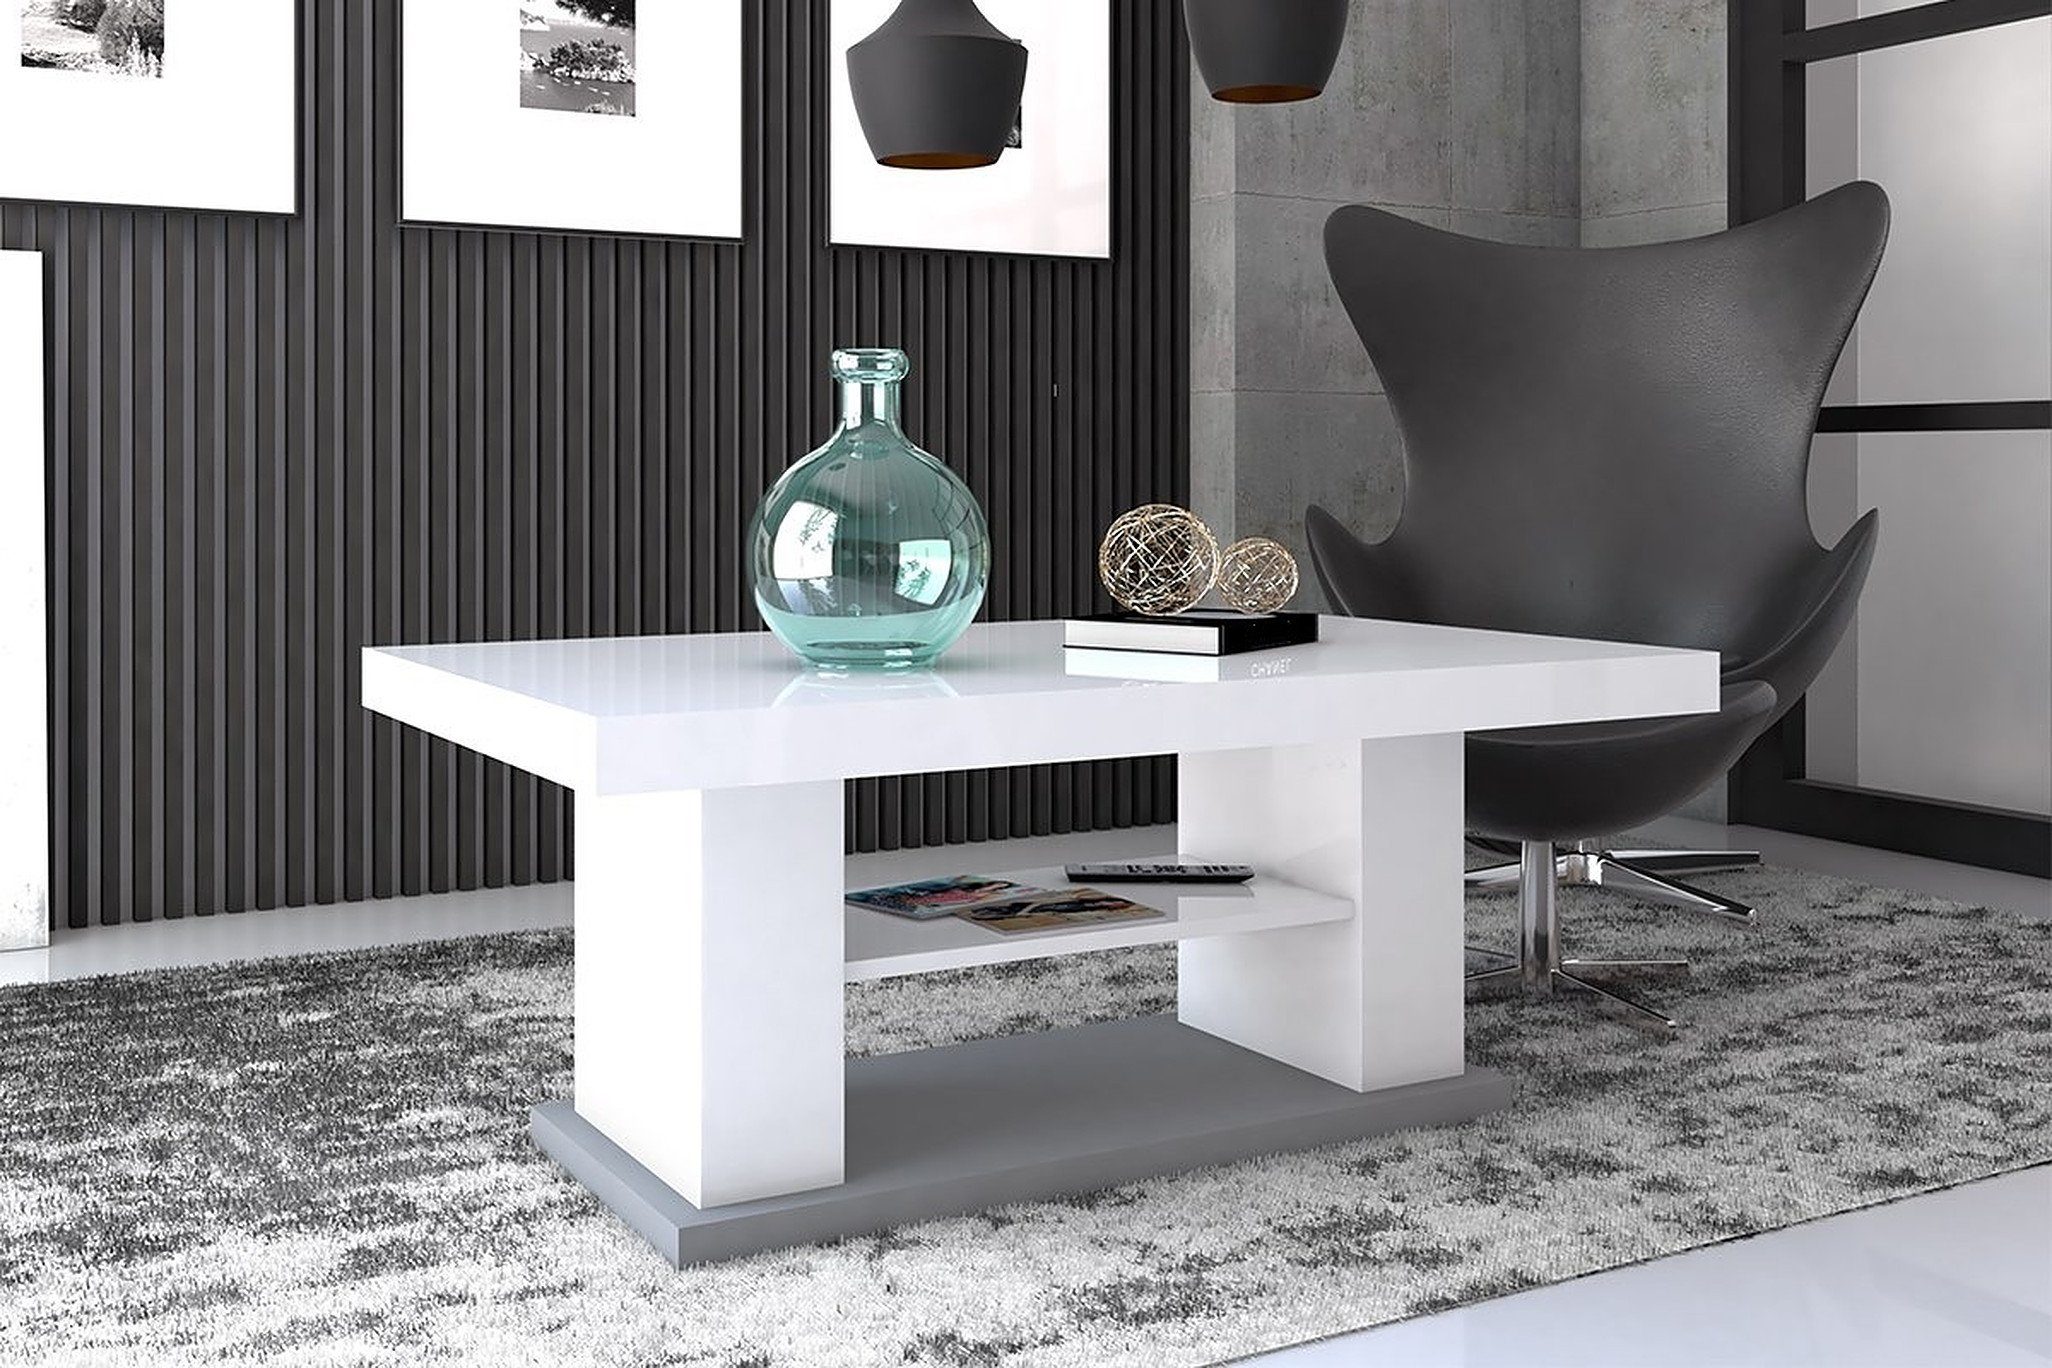 - Grau Weiß Tisch / Hochglanz ausziehbar designimpex Hochglanz Hochglanz höhenverstellbar Weiß Grau HN-777 Design Couchtisch